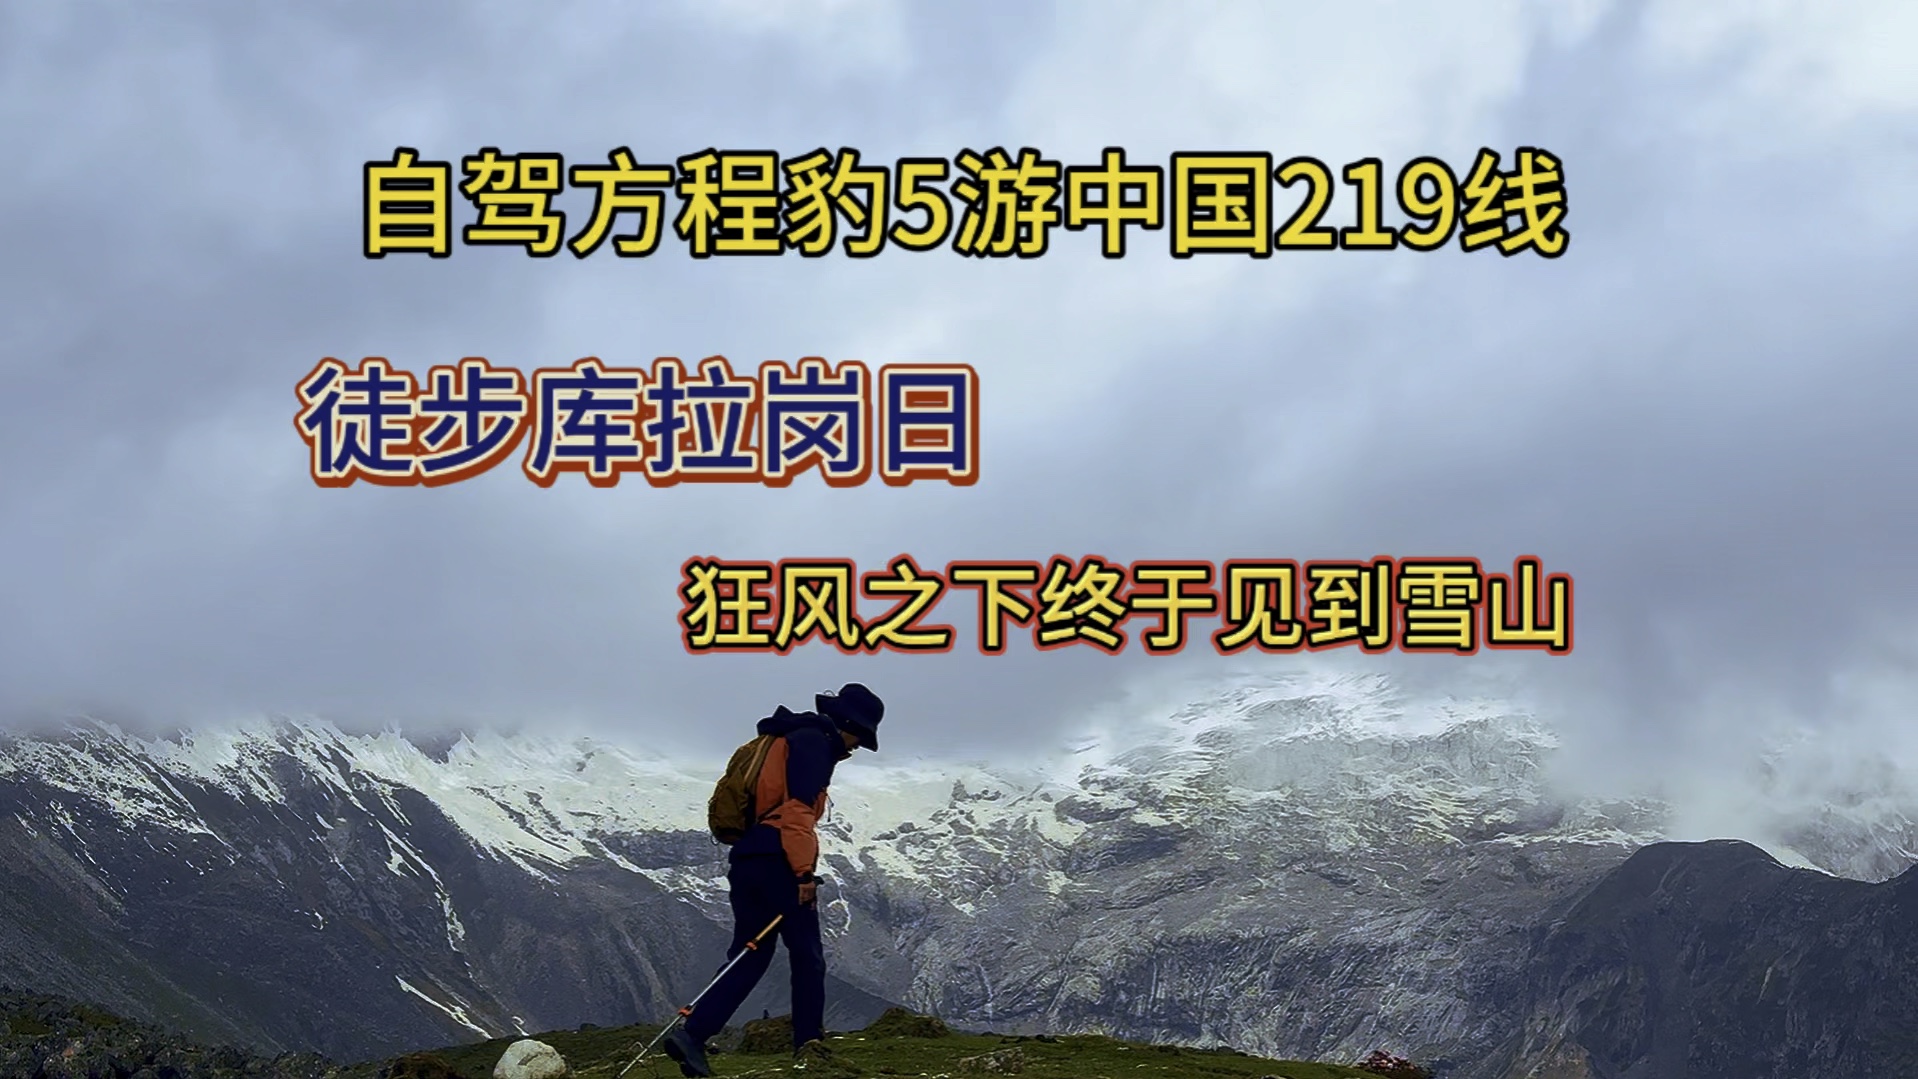 自驾方程豹5游中国219线,狂风中徒步海拔5000米终于看见库拉岗日雪山